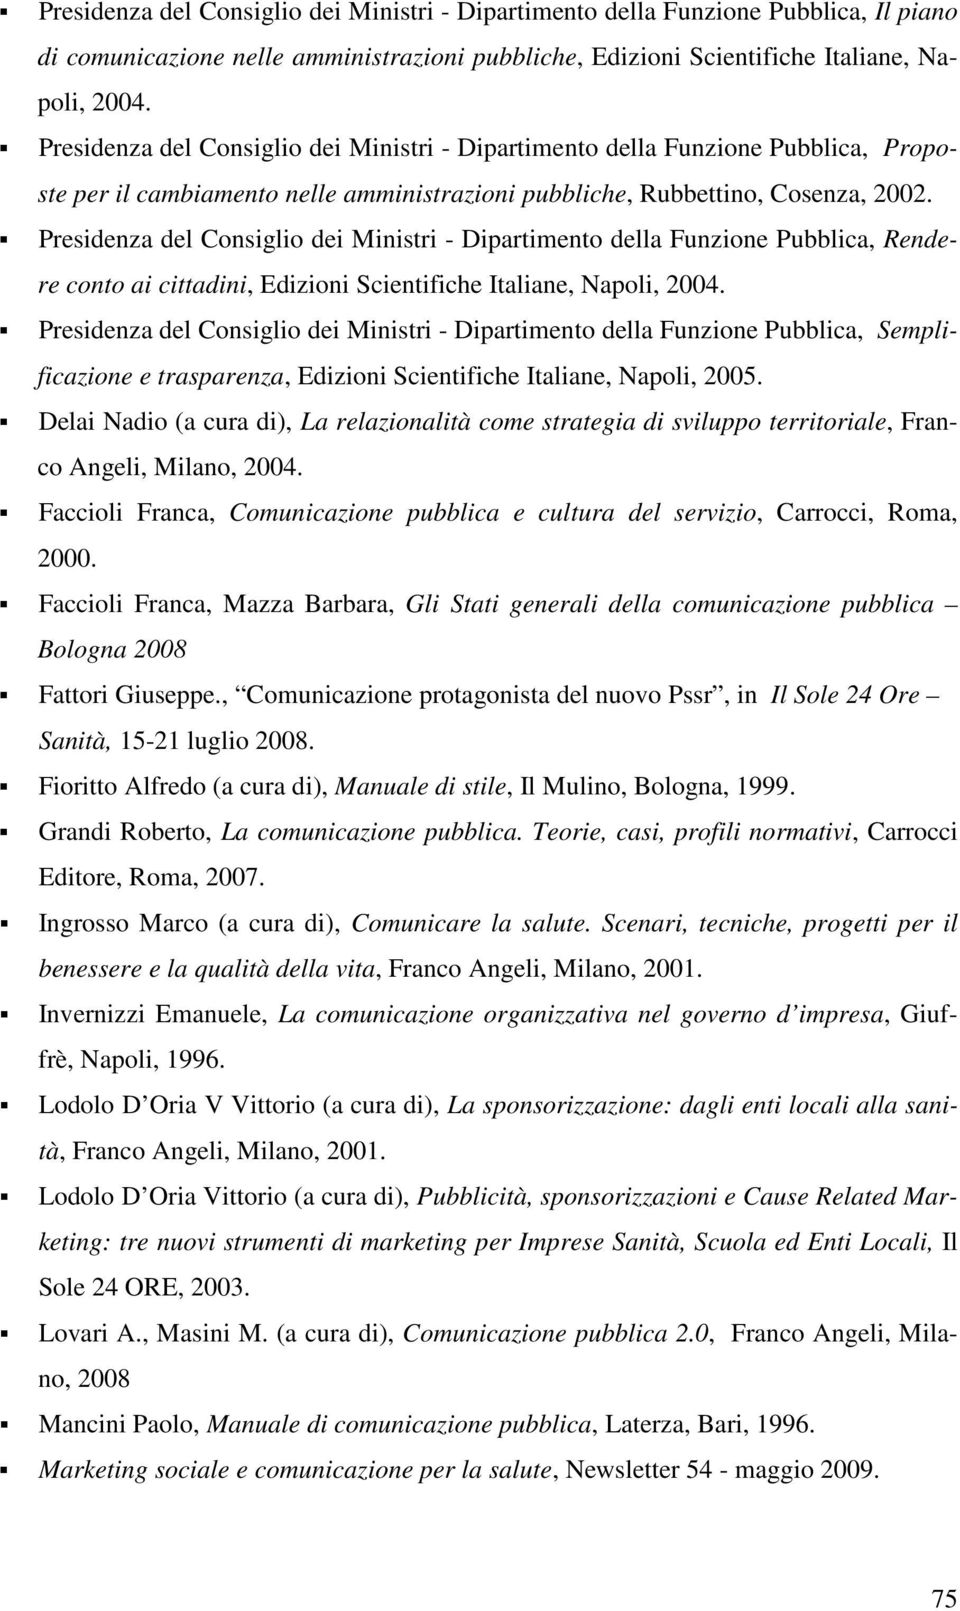 Presidenza del Consiglio dei Ministri - Dipartimento della Funzione Pubblica, Rendere conto ai cittadini, Edizioni Scientifiche Italiane, Napoli, 2004.